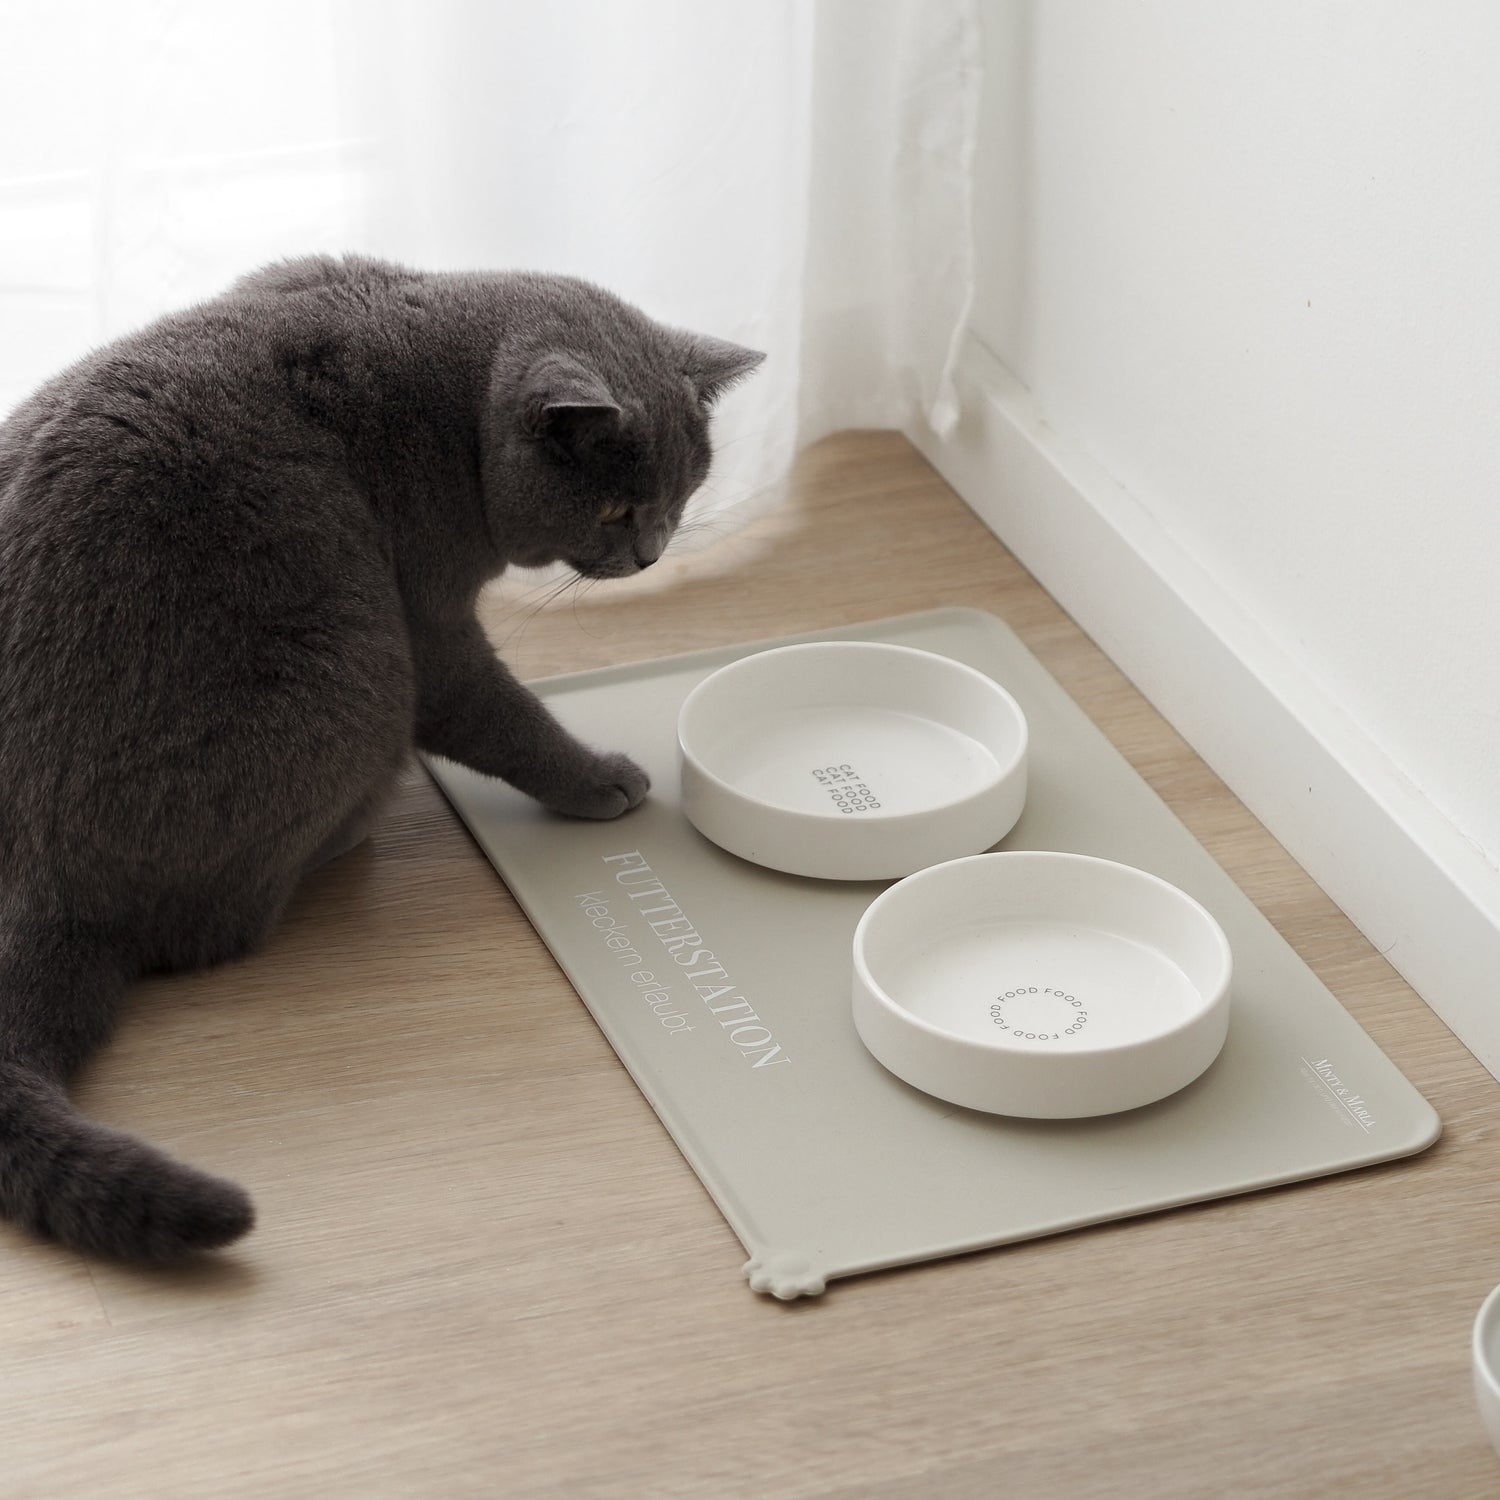 Artgerechter Futterplatz für Katzen bestehend aus einer beigen Napfunterlage und zwei flachen Näpfen aus Keramik.